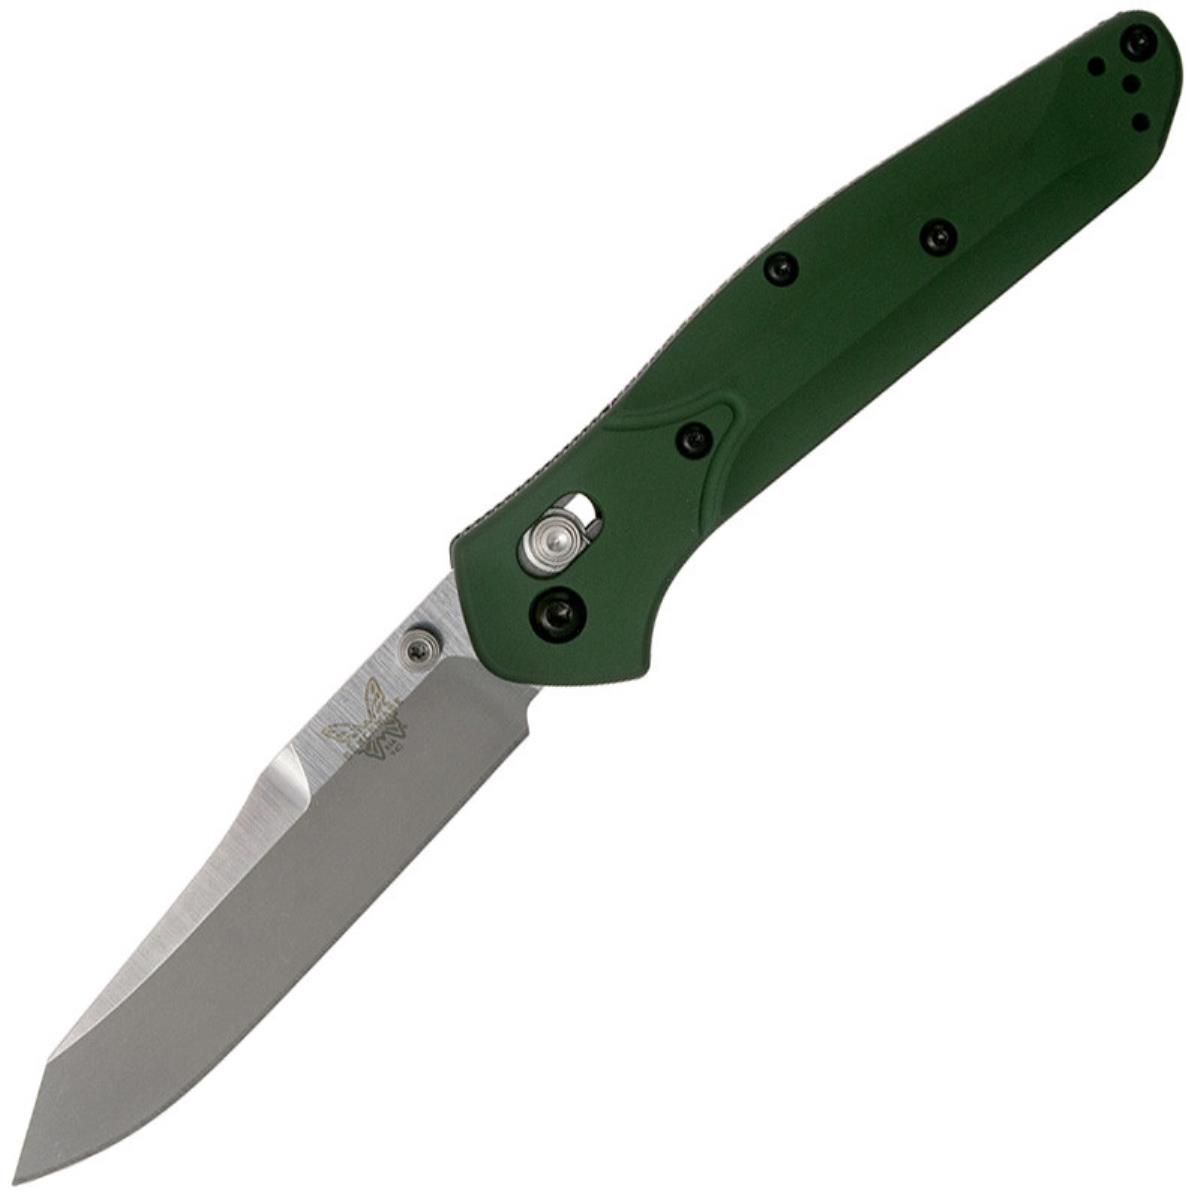 Нож модель BM9400 Osborne рук-ть зелен. алюминий, клинок S30V Benchmade нож для шашлыка 30 см длина лезвия 15 см армения